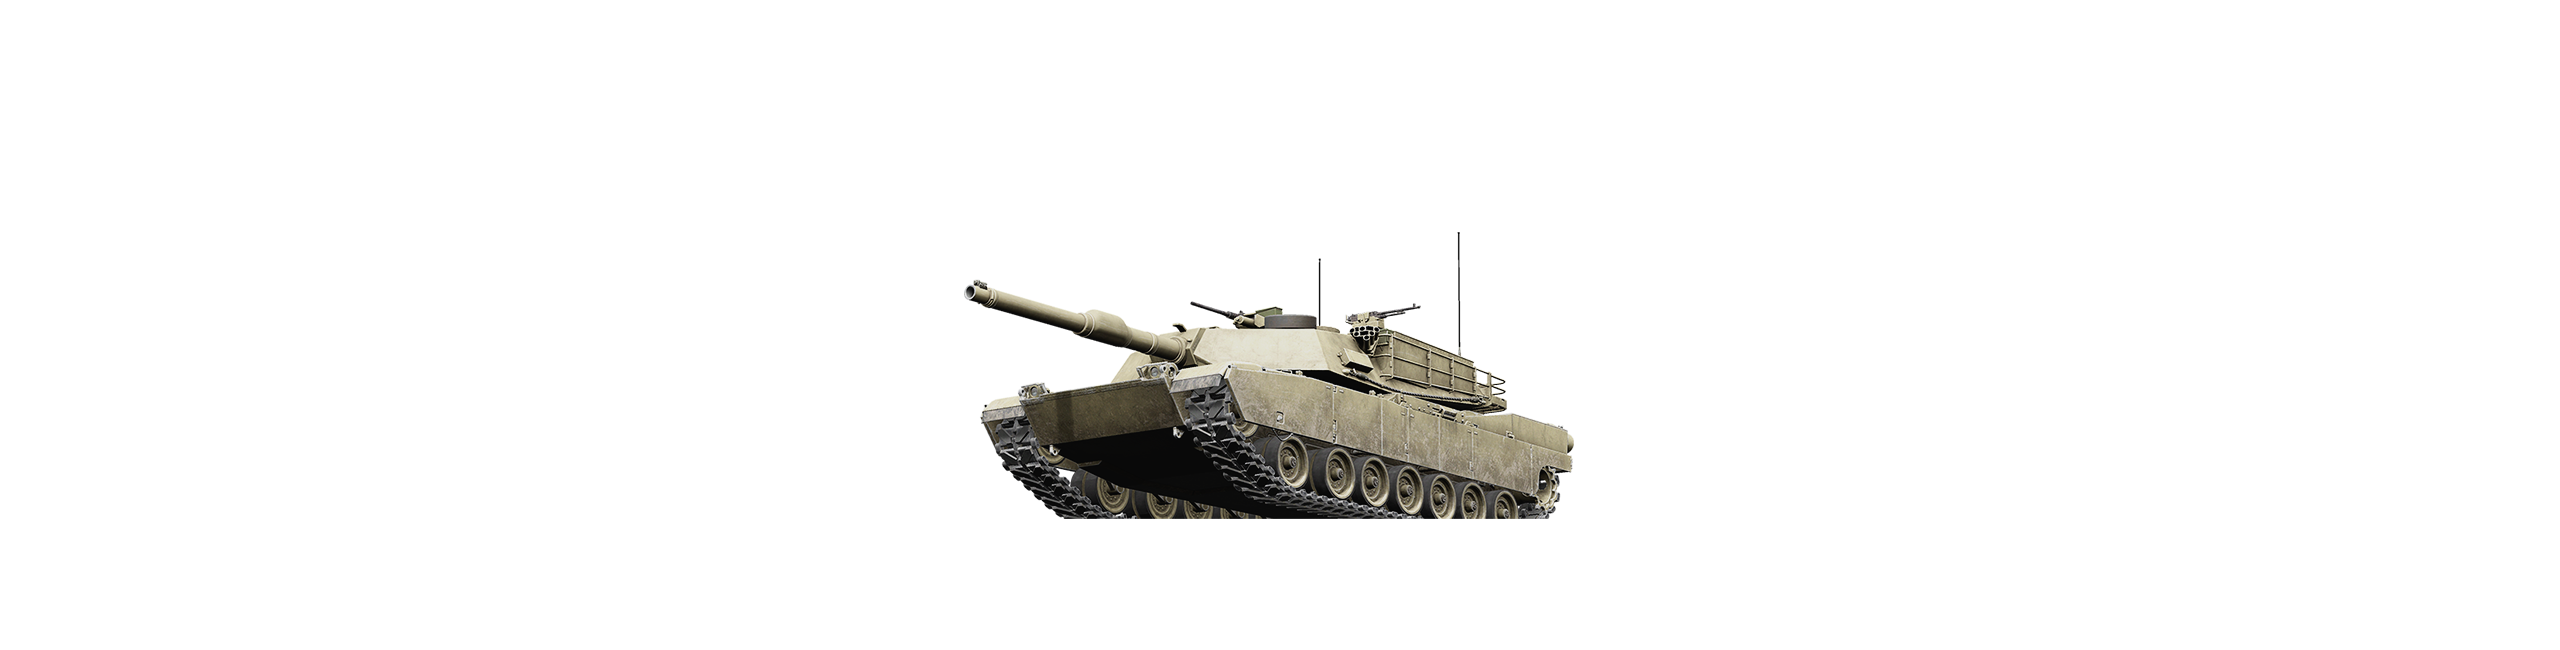 Abrams Tank PNG Image File